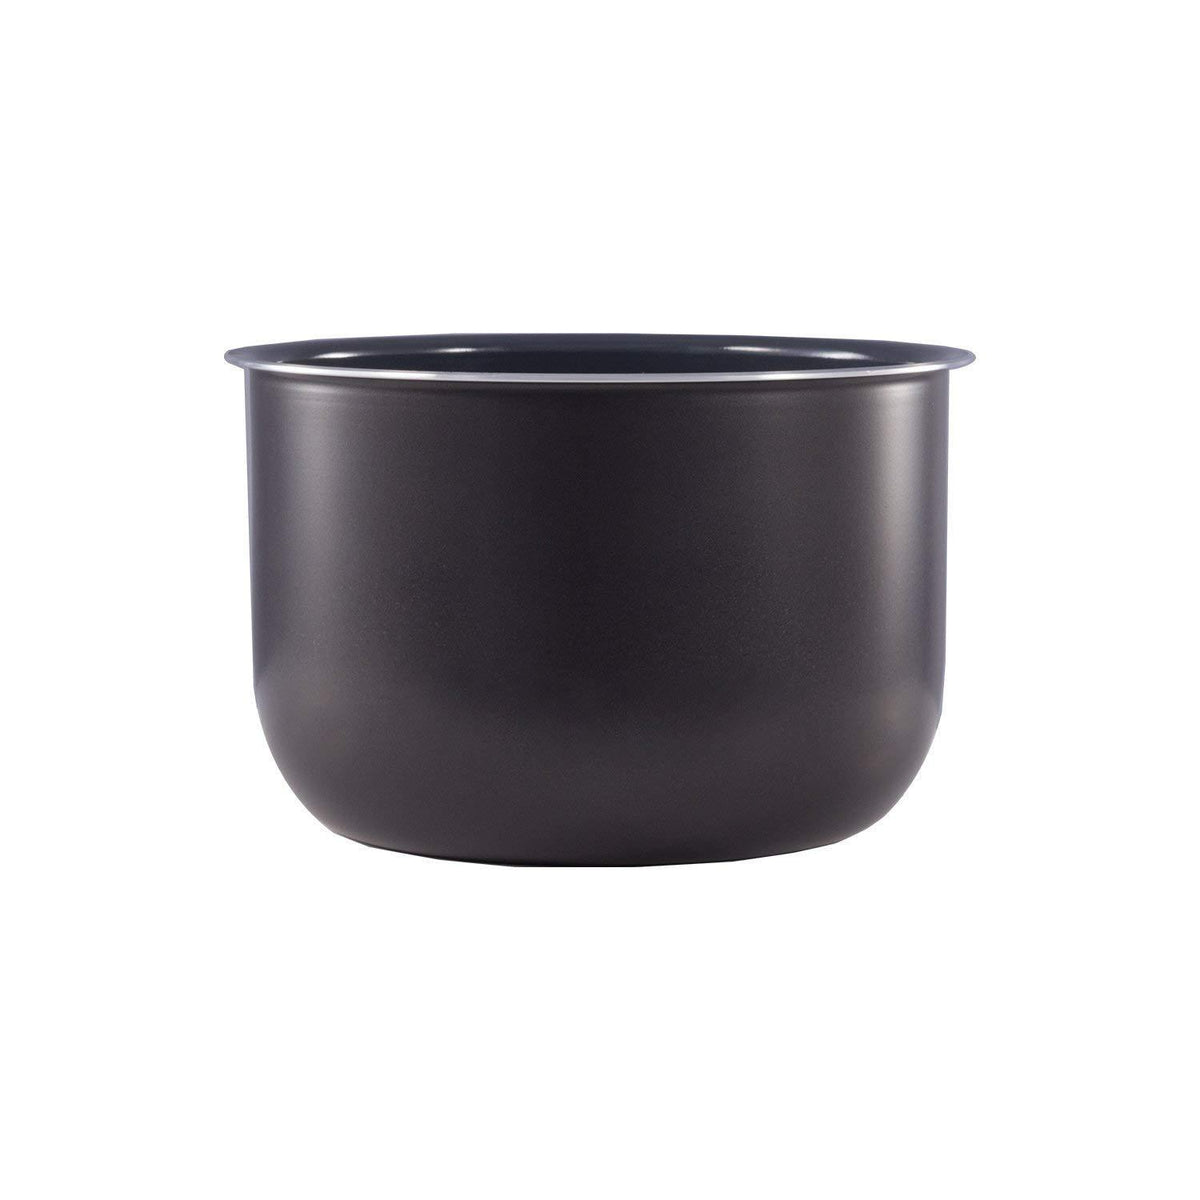 Instant Pot Ceramic Non-Stick Interior Coated Inner Cooking Pot - 6 Quart